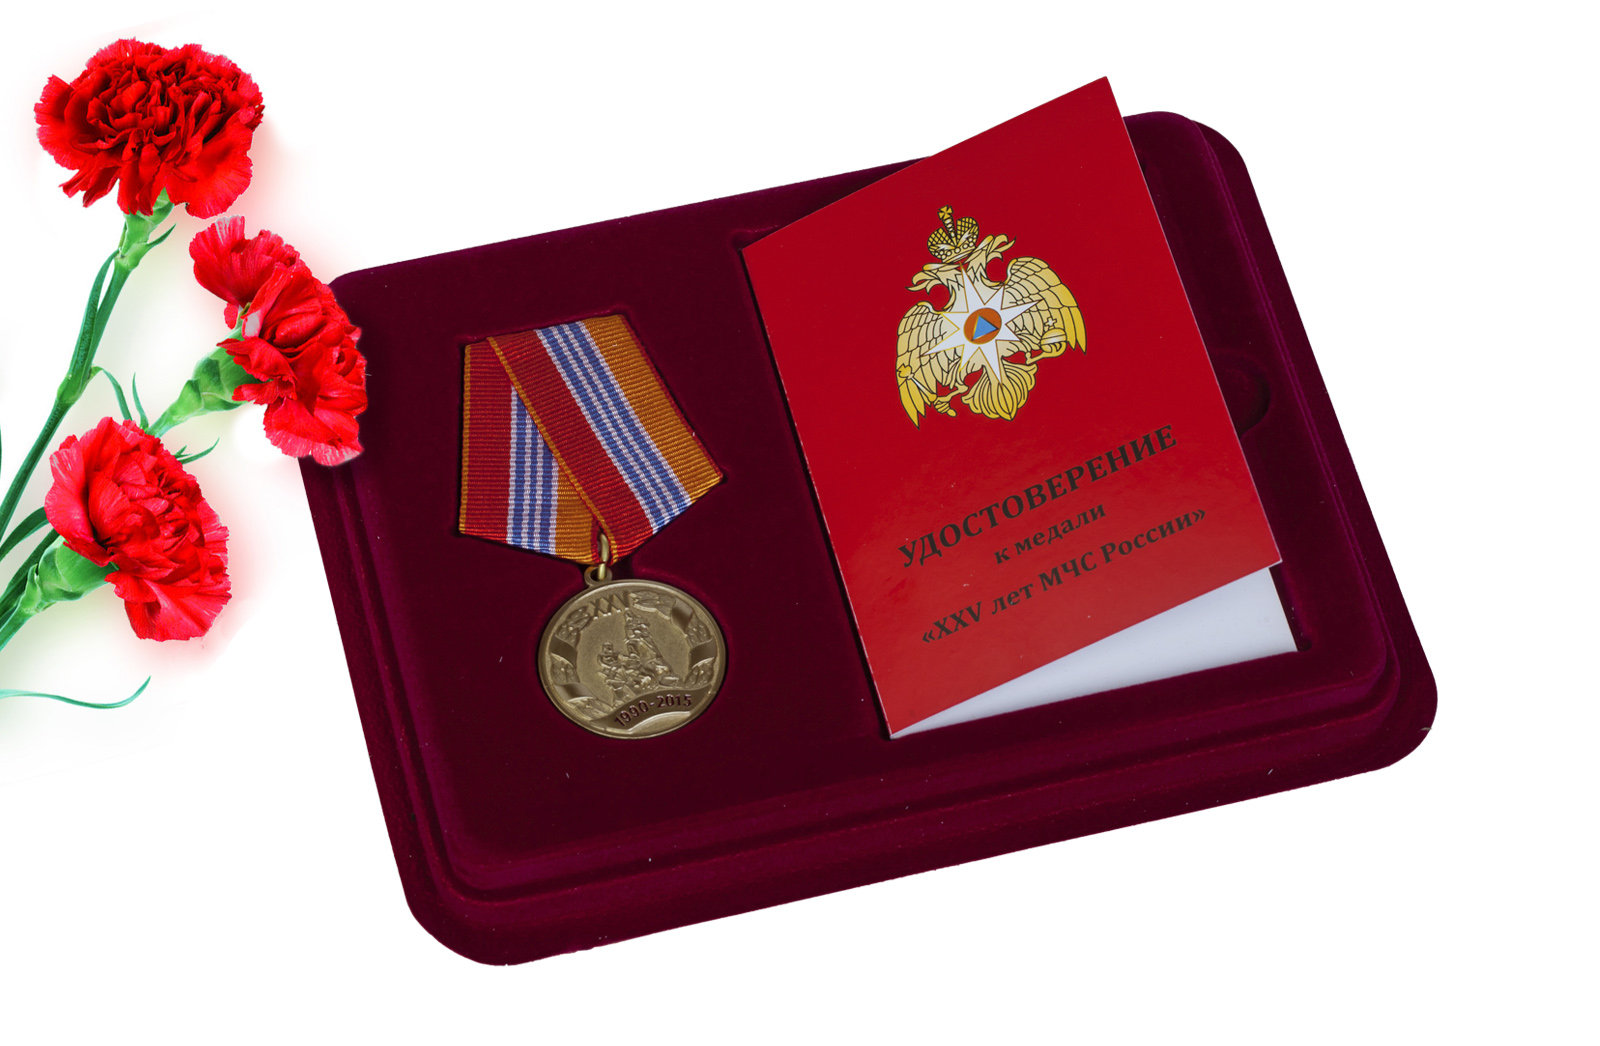 Купить юбилейную медаль 25 лет МЧС РФ выгодно онлайн